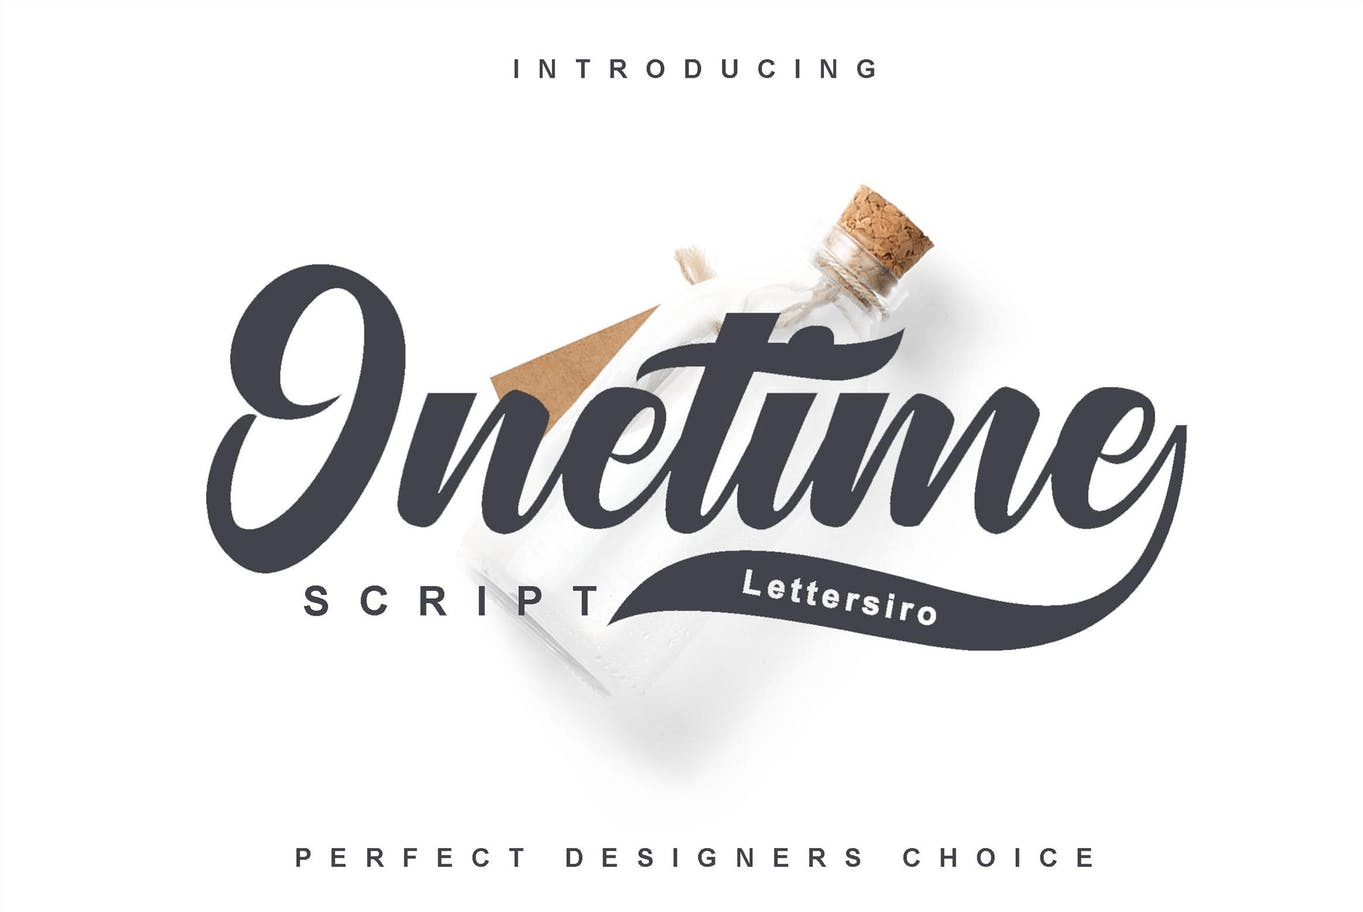 Onetime script font for logotypes